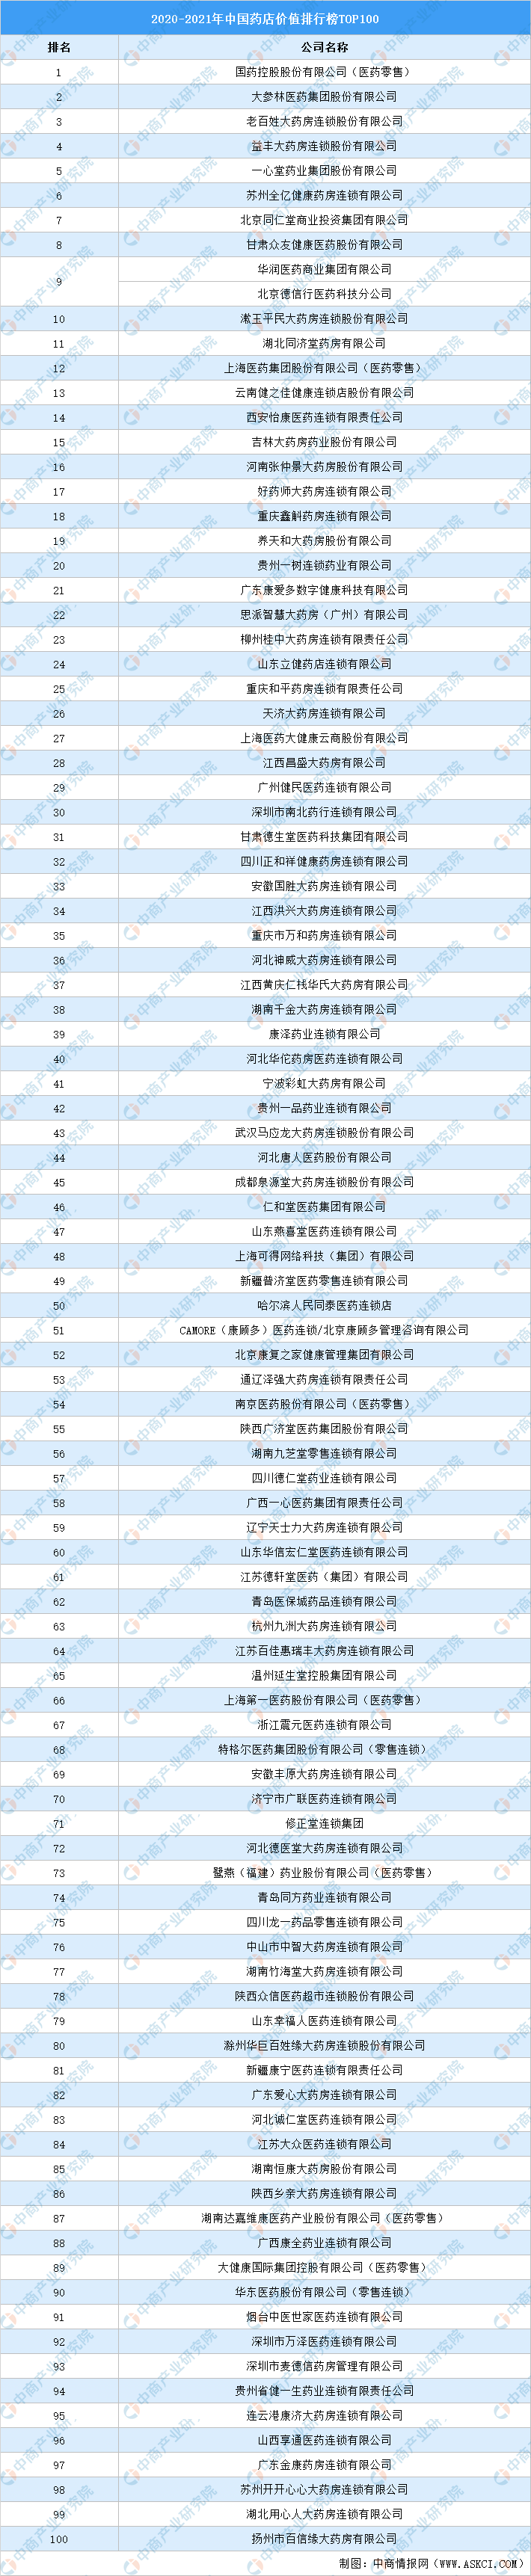 补阳药排行_中药榜《2021中国中药研发实力排行榜TOP50》隆重发布!